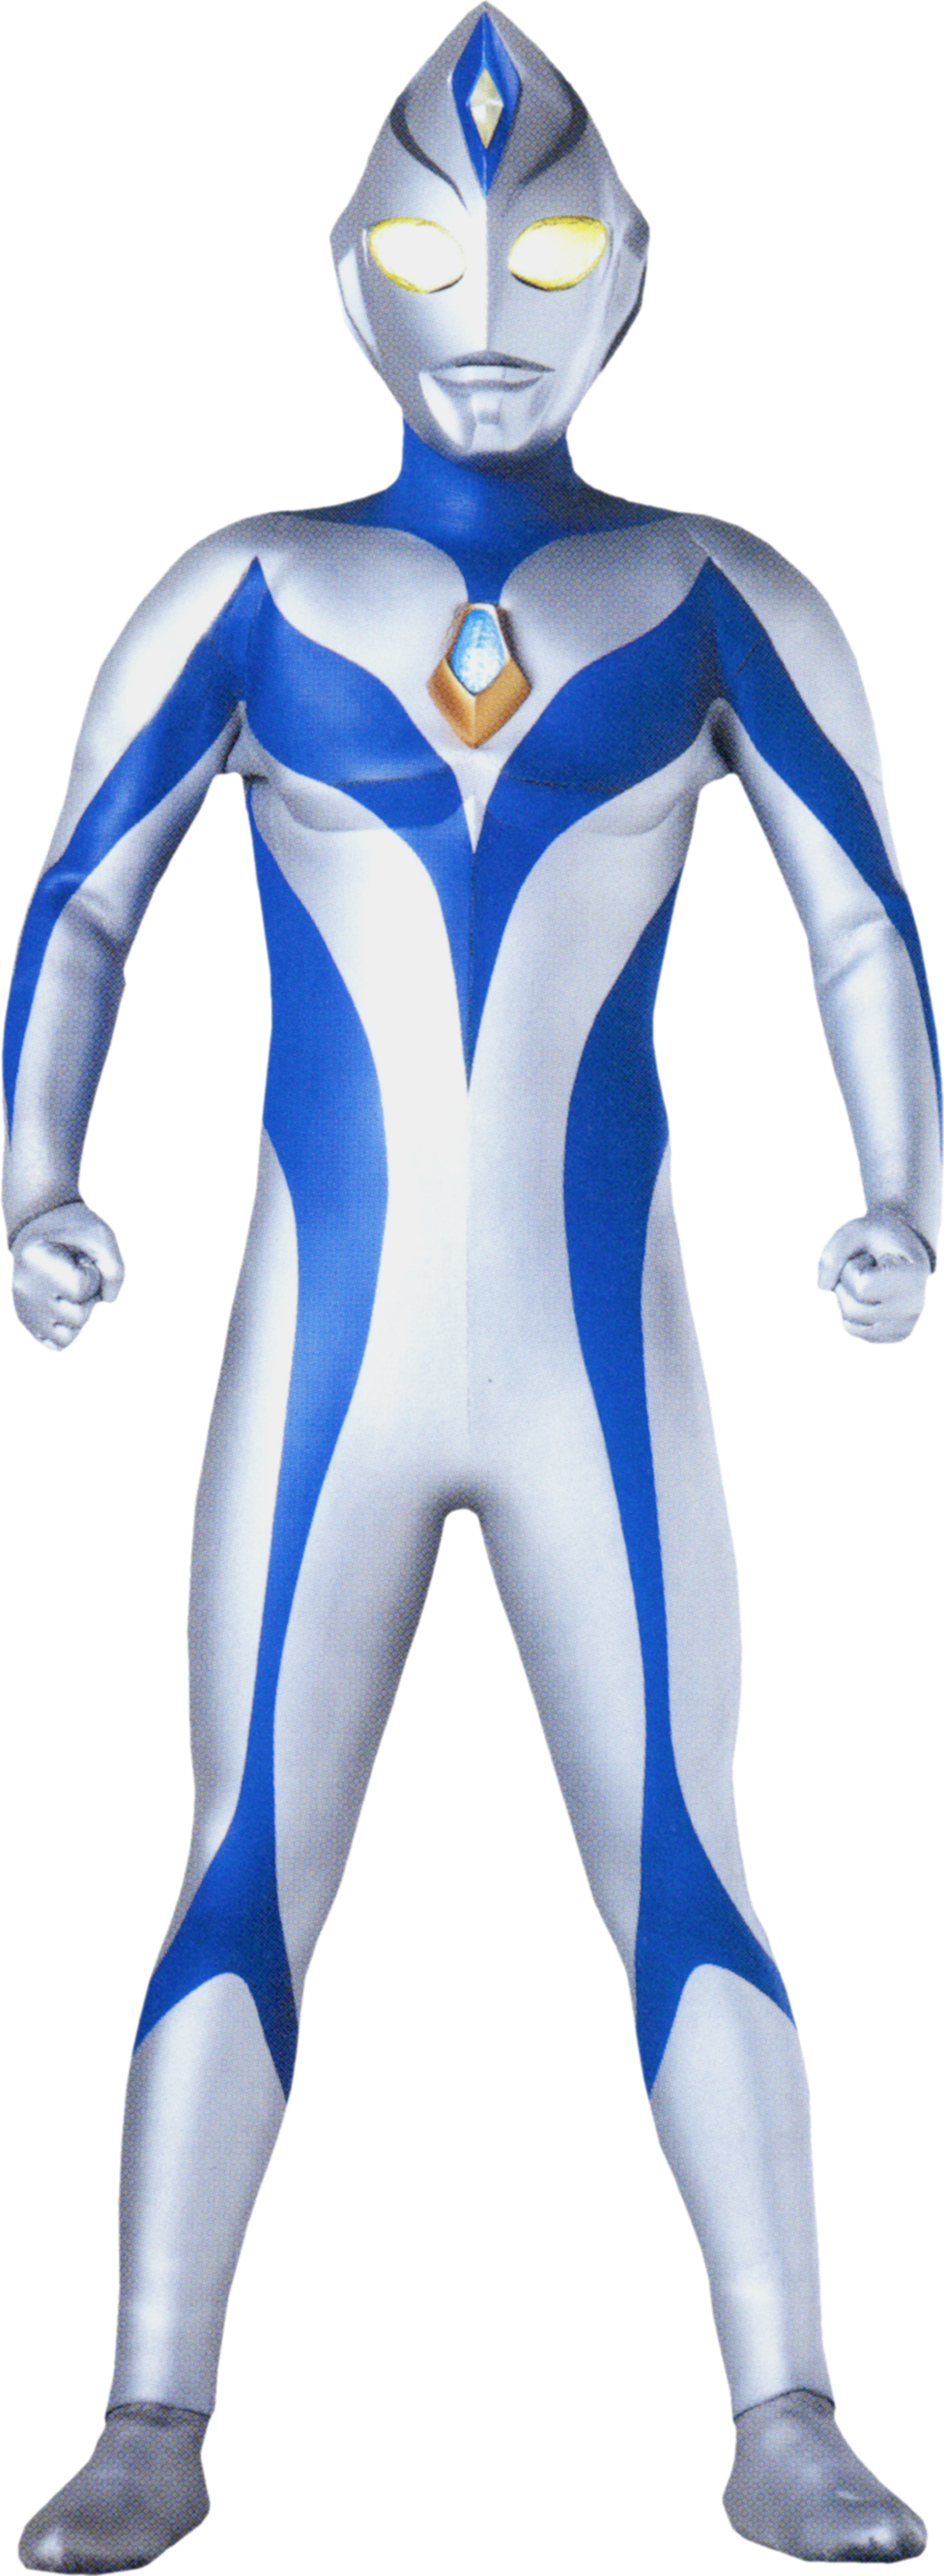  Ultraman  Blue  Ultraman  World